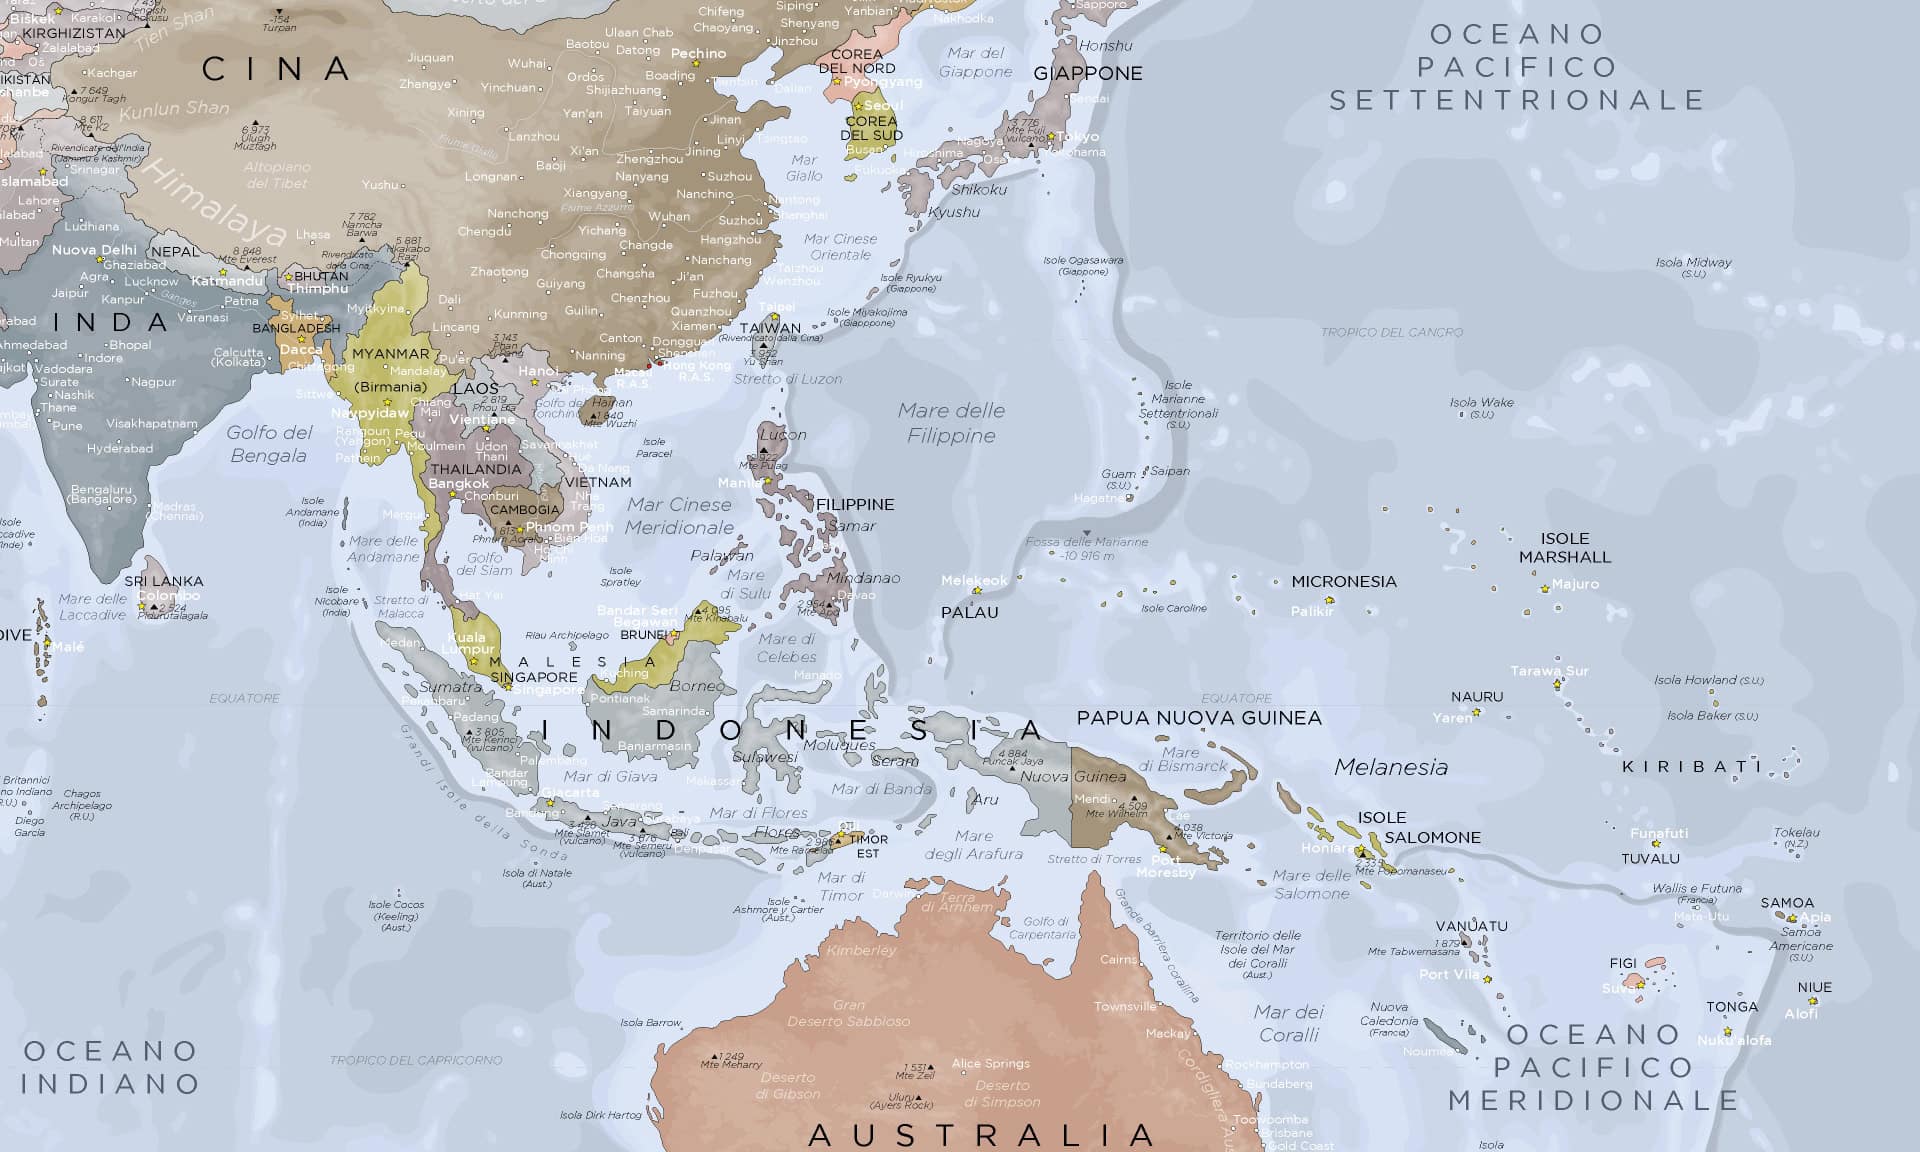 Mappa del mondo Completa – Mappamondo con l'Antartide